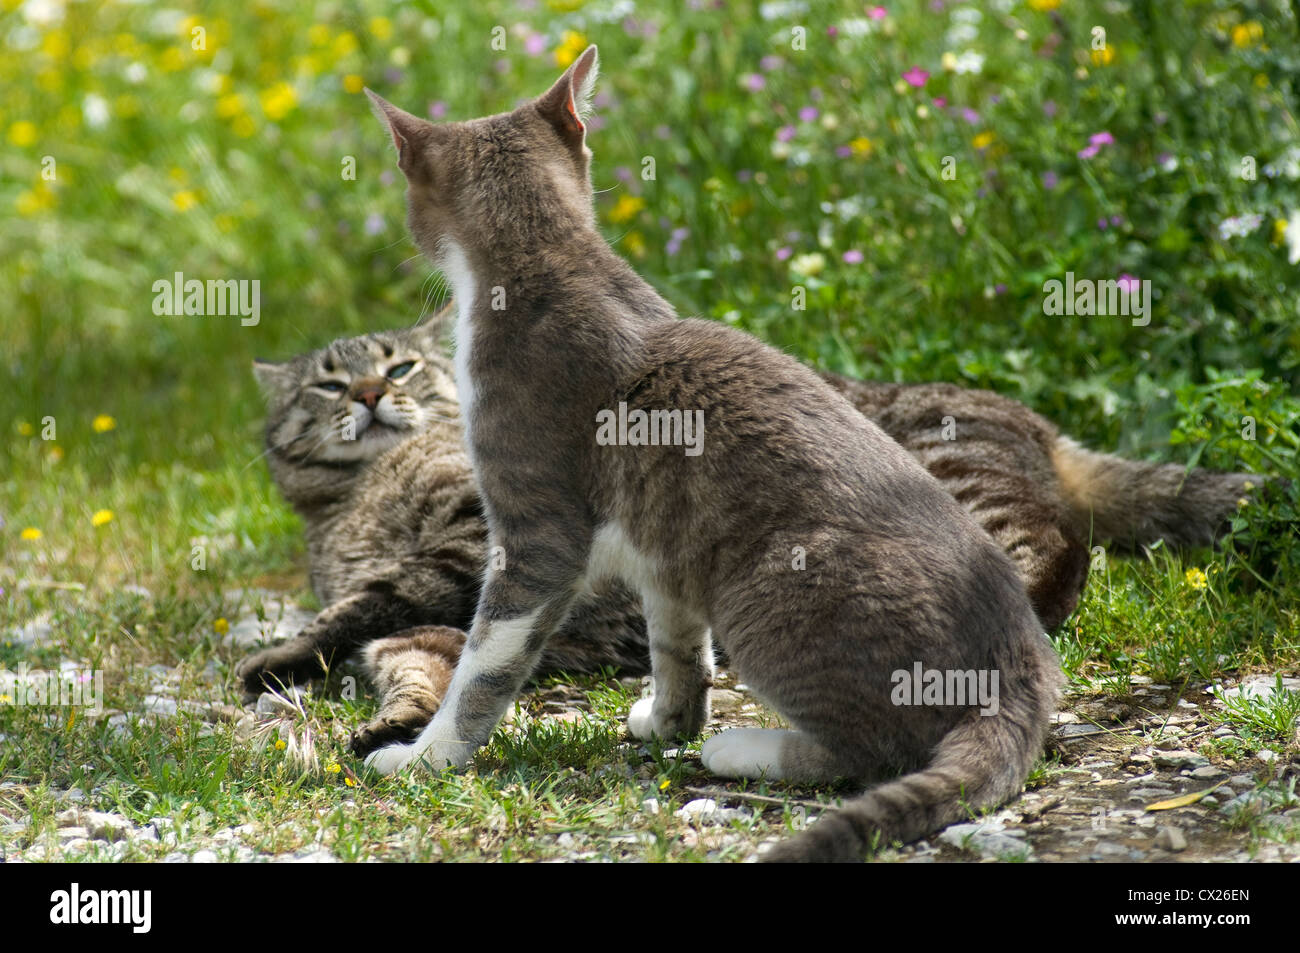 Deux chats bagarre dans une prairie en fleurs Banque D'Images